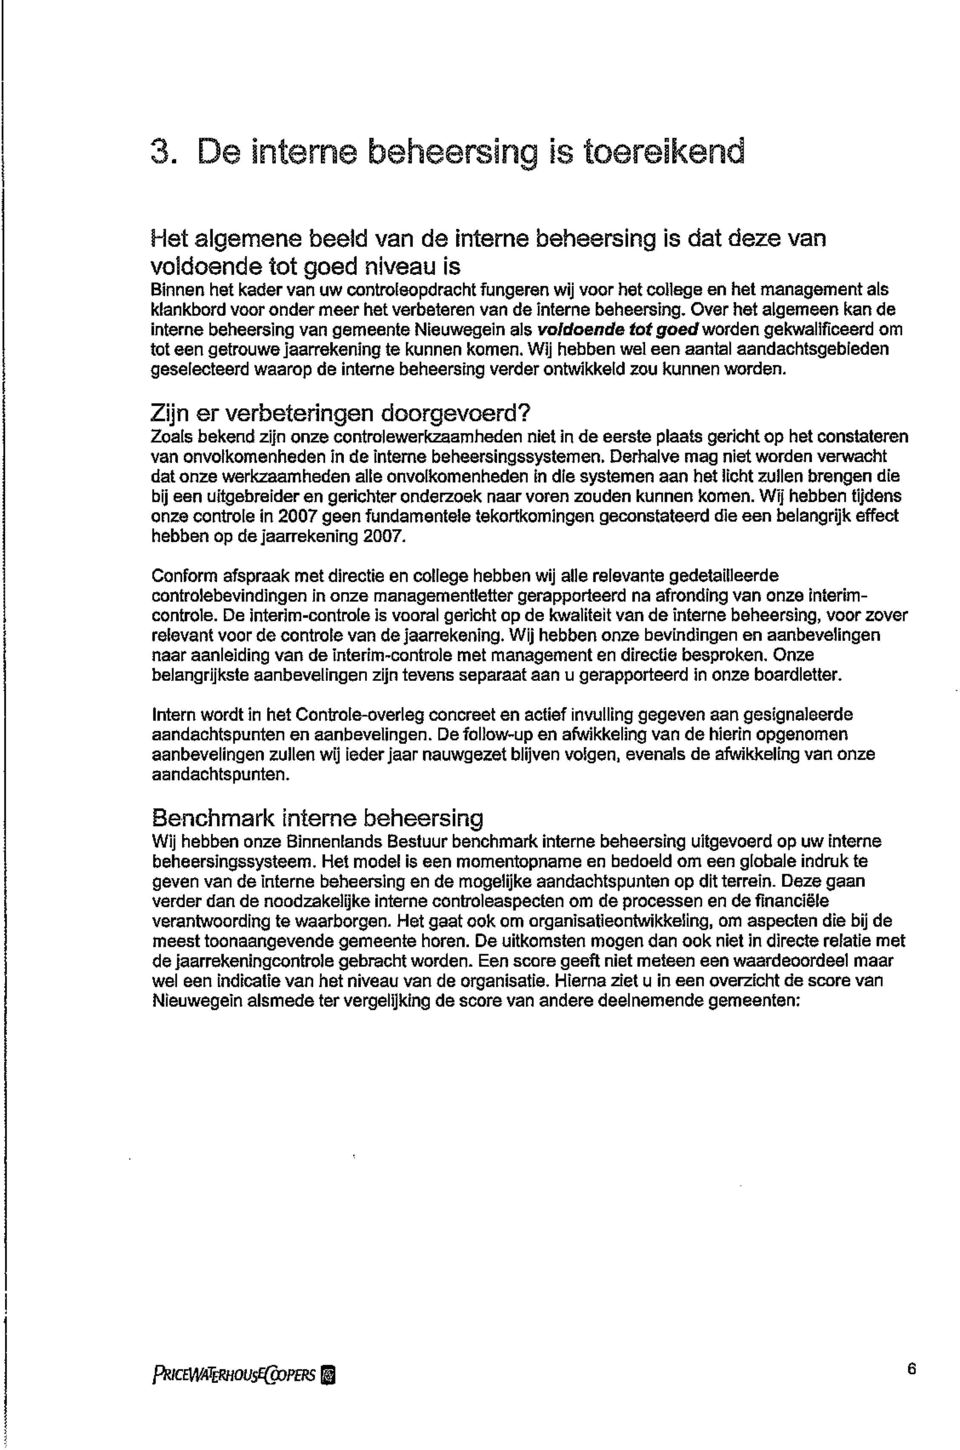 Over het algemeen kan de interne beheersing van gemeente Nieuwegein als voldoende tot goed worden gekwalificeerd om tot een getrouwe jaarrekening te kunnen komen.